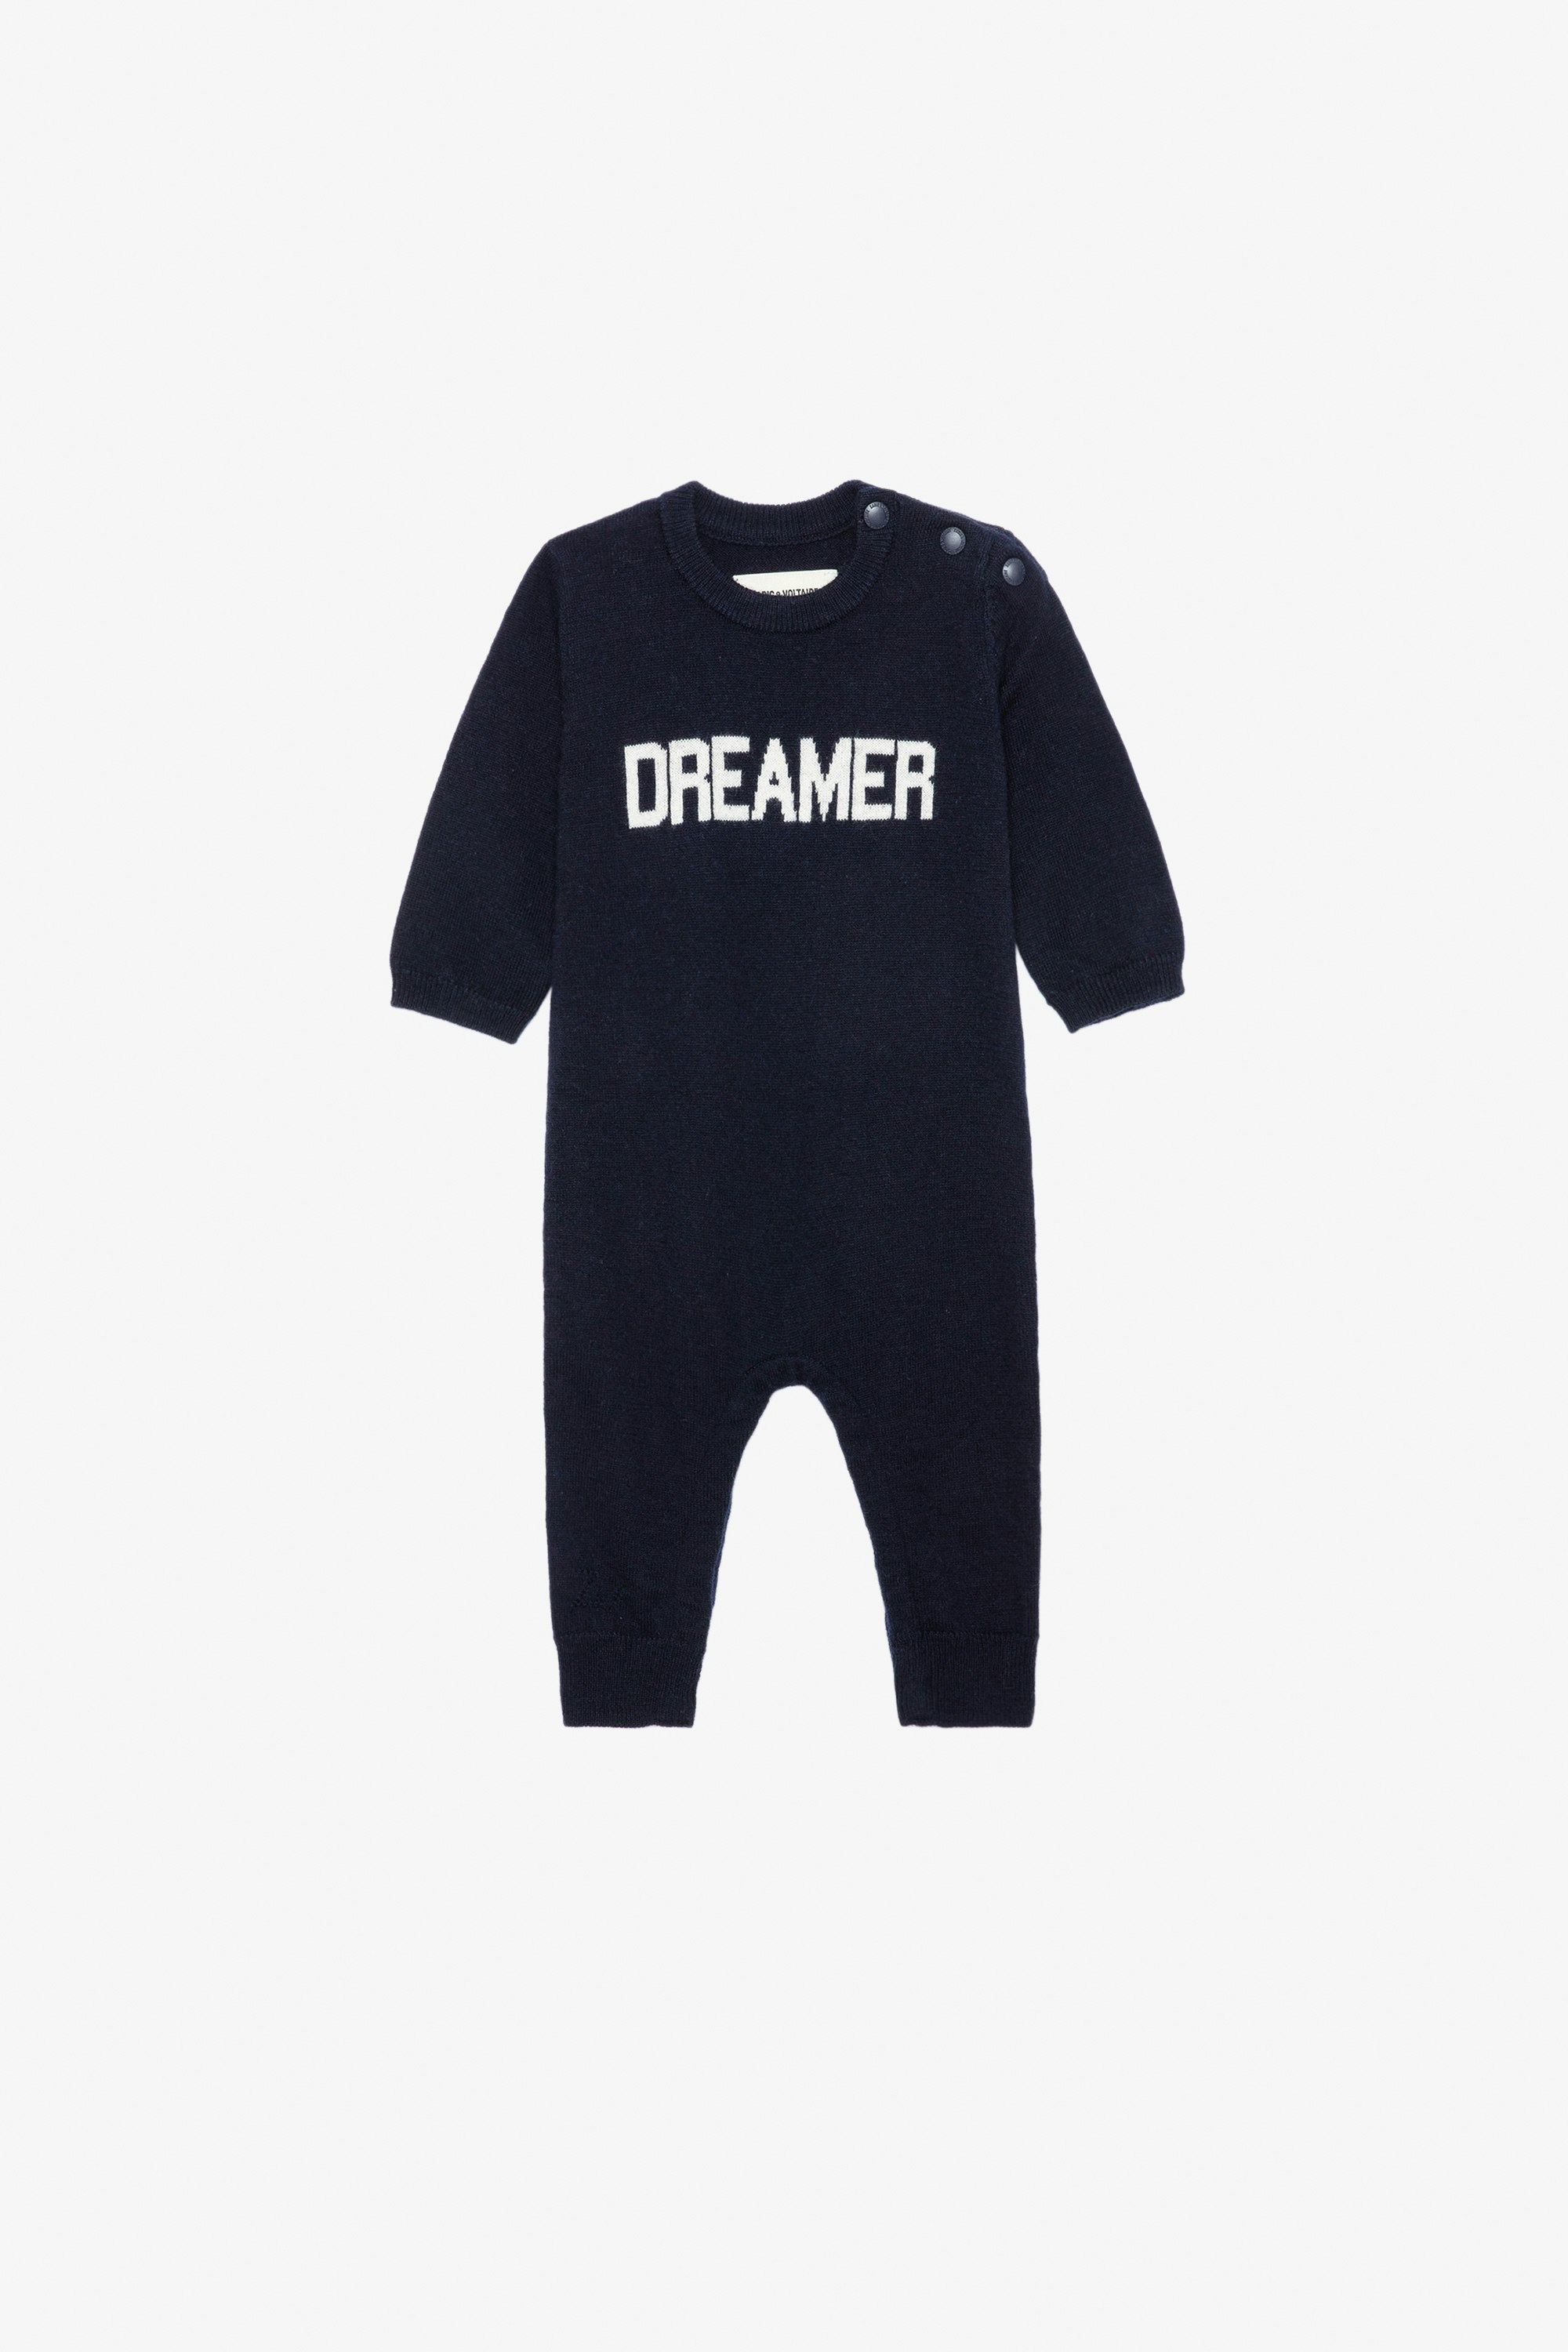 Combinaison Didou Bébé Combinaison en maille tricot bleue marine à message "Dreamer" bébé.